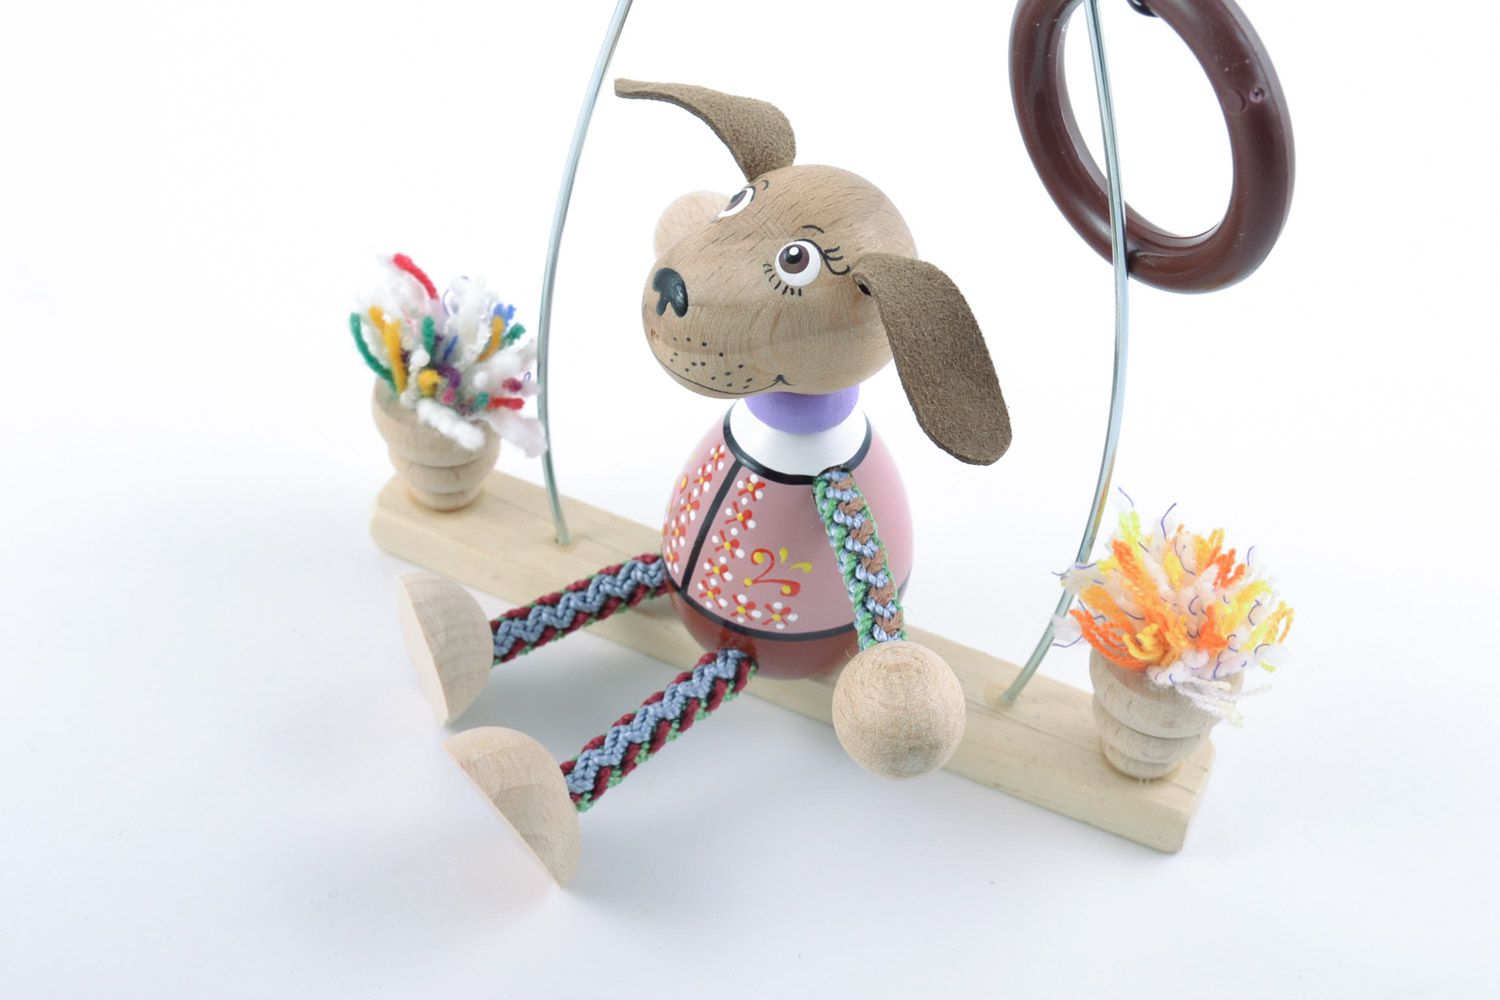 Designer Kinder Holz Spielzeug Hund aus der Bank mit Öko Farben bemalt einzigartig foto 3